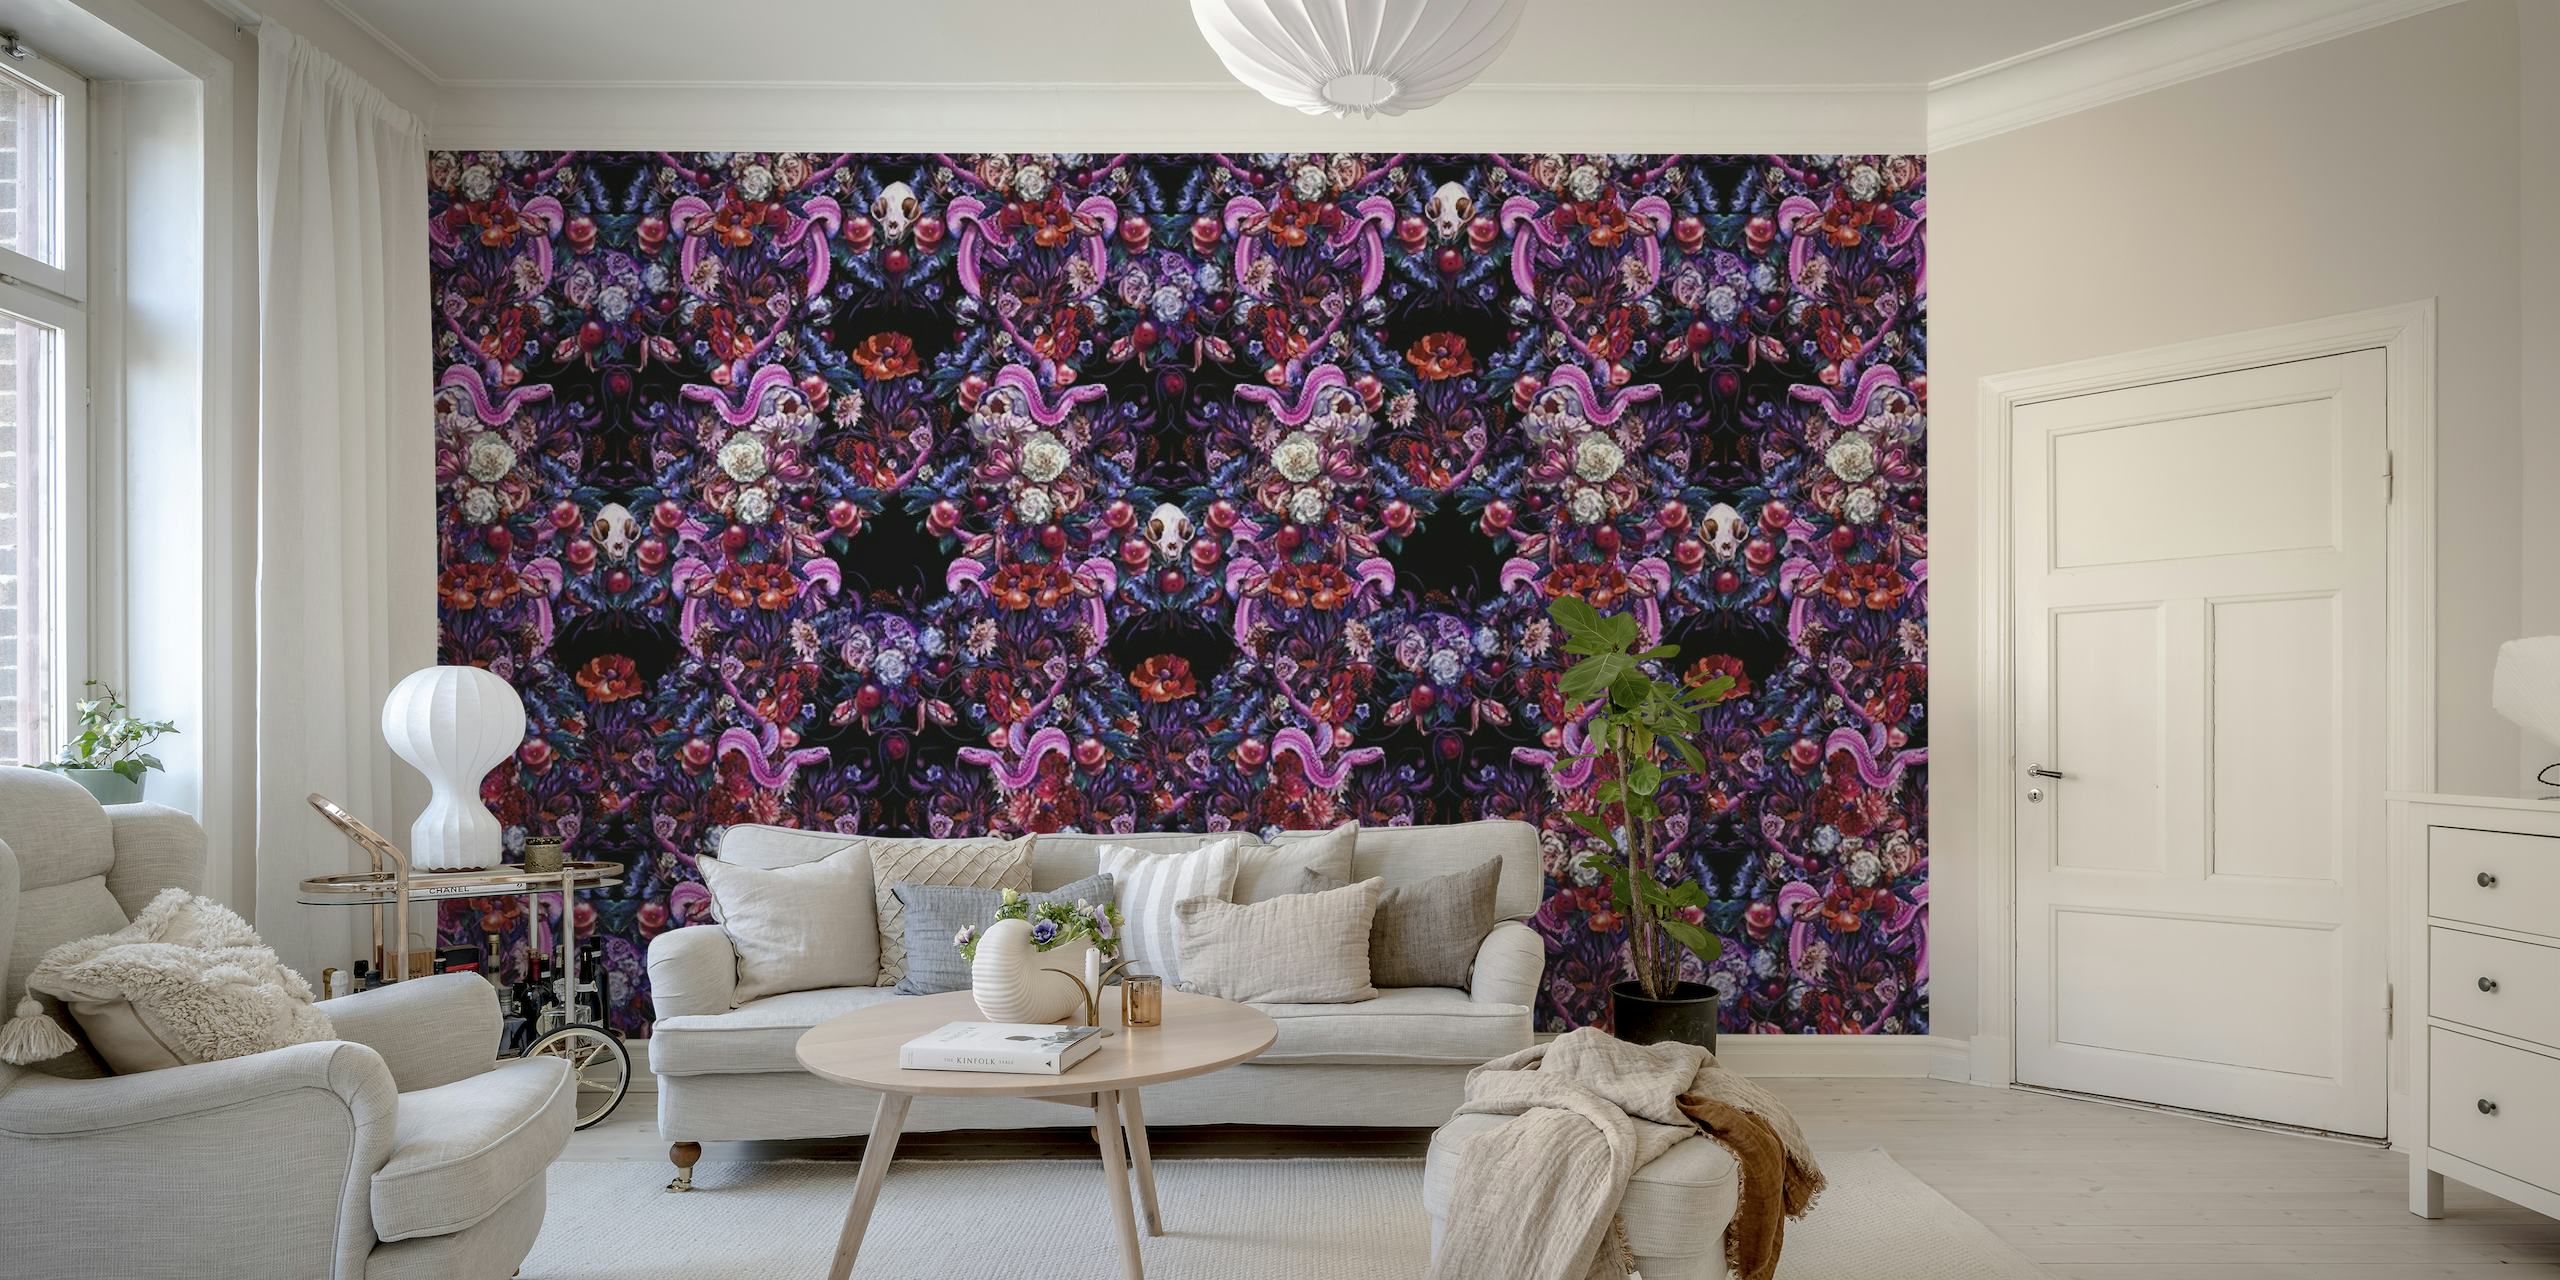 Mural de parede de inspiração gótica com padrão simétrico de cobras, caveiras e flores em tons de roxo, rosa e azul